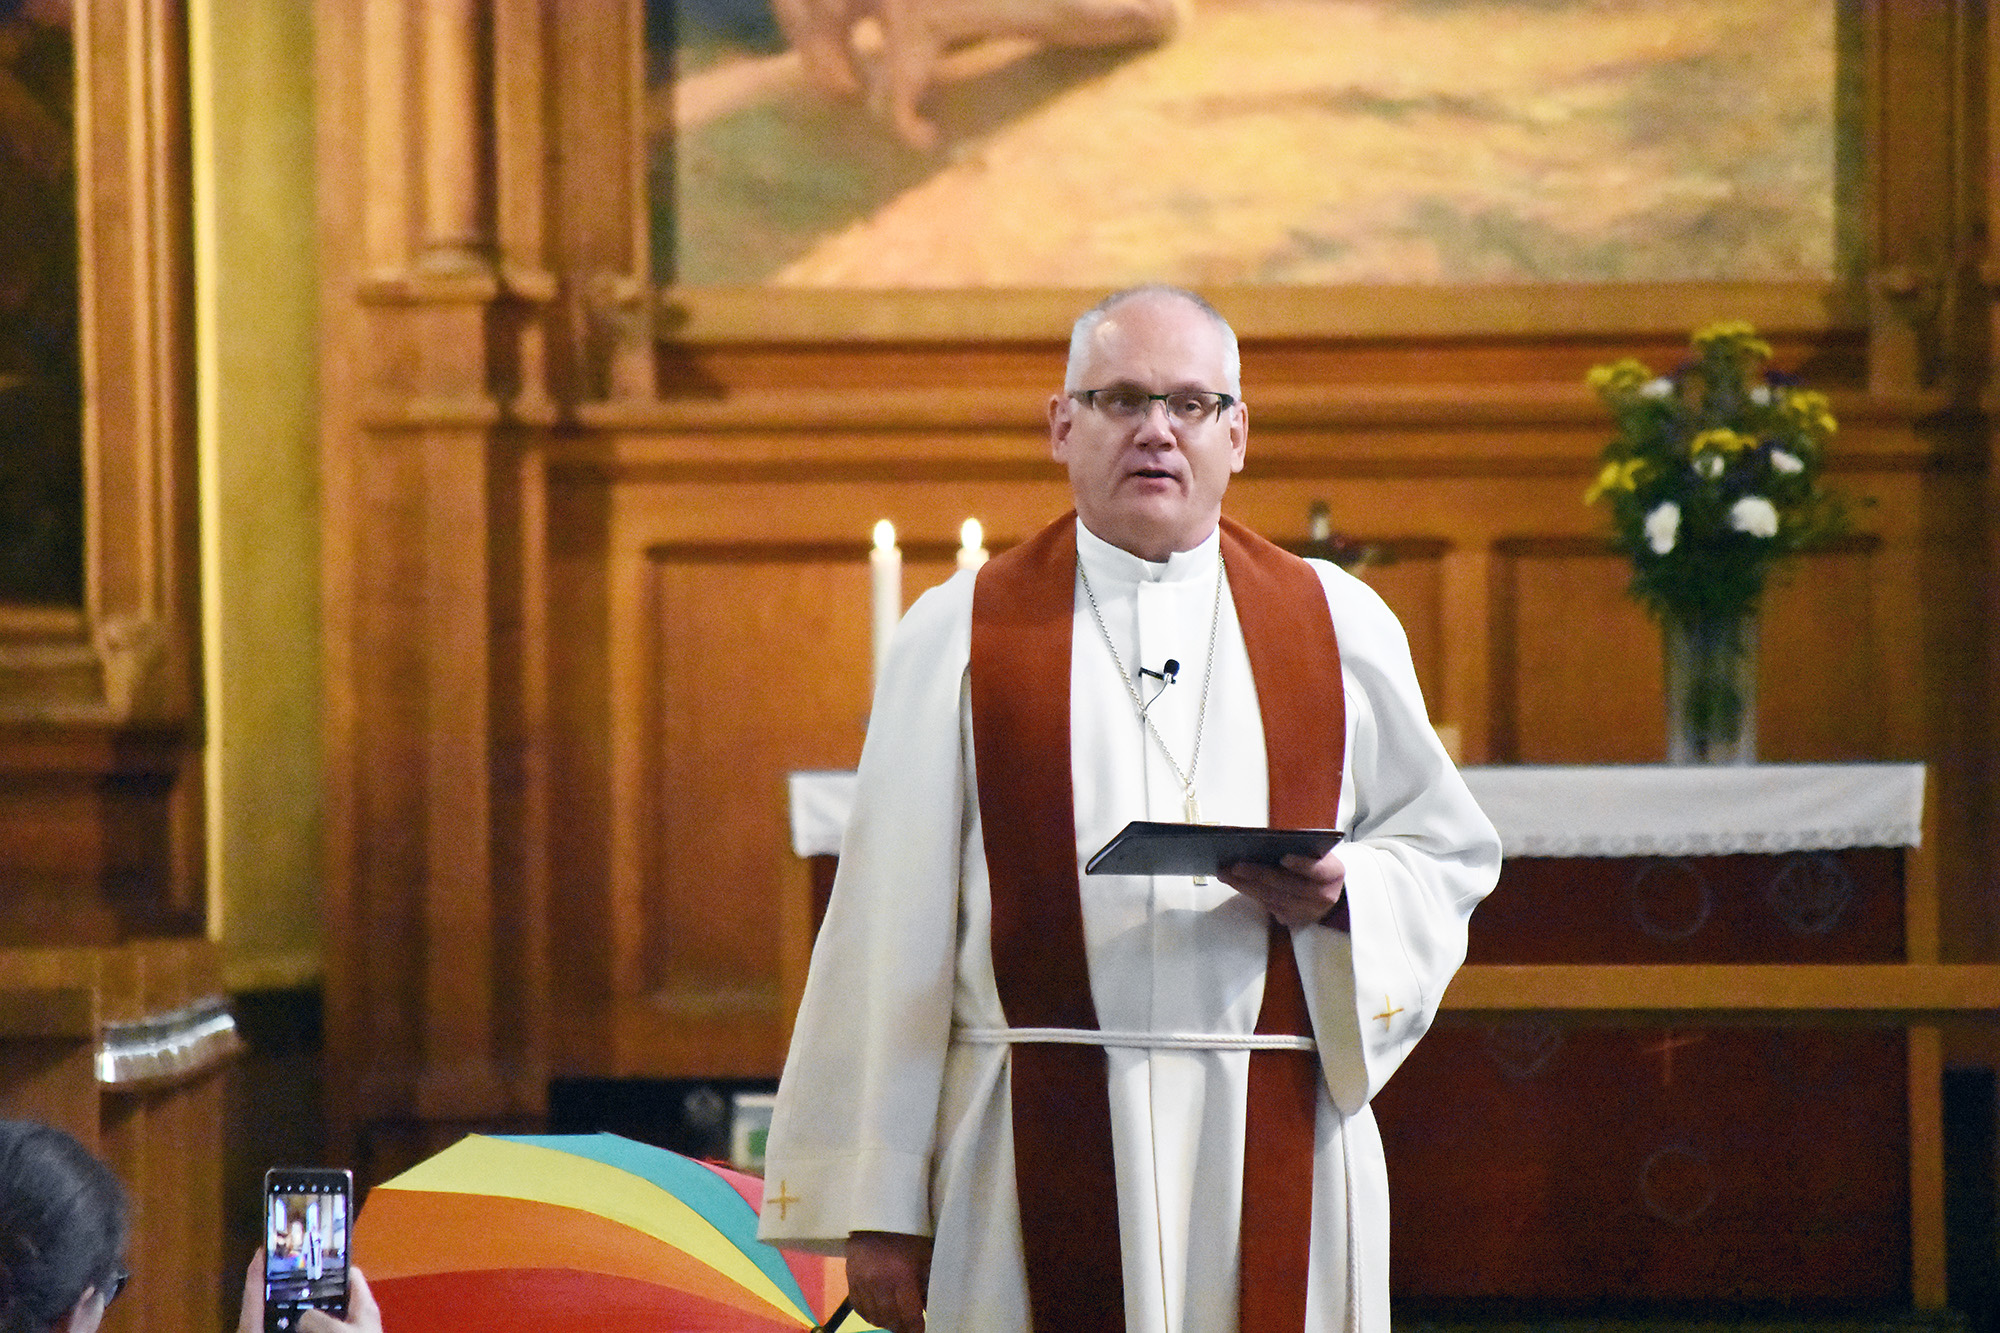 Man iklädd alba pratar i en kyrka. I bakgrunden syns ett regnbågsfärgat paraply.